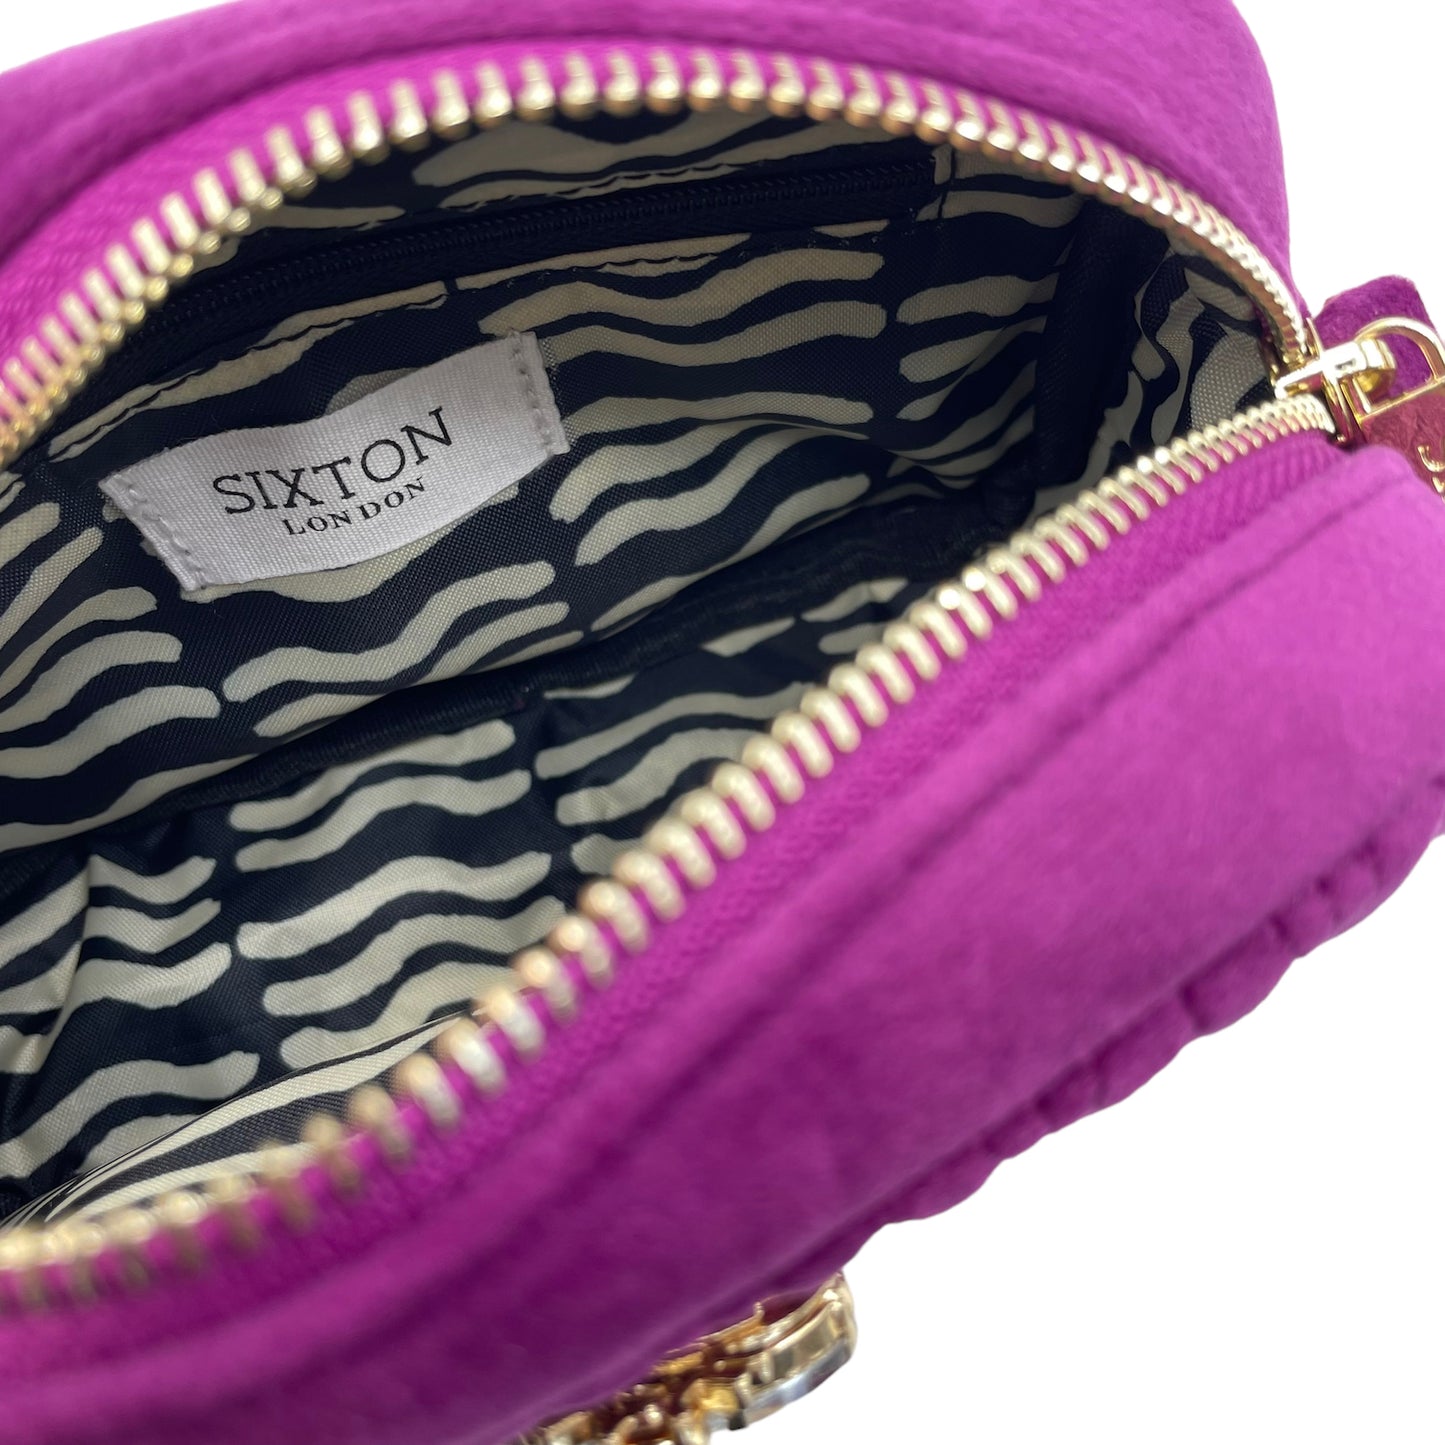 Velvet Rivington handbag in fuchsia, recycled velvet